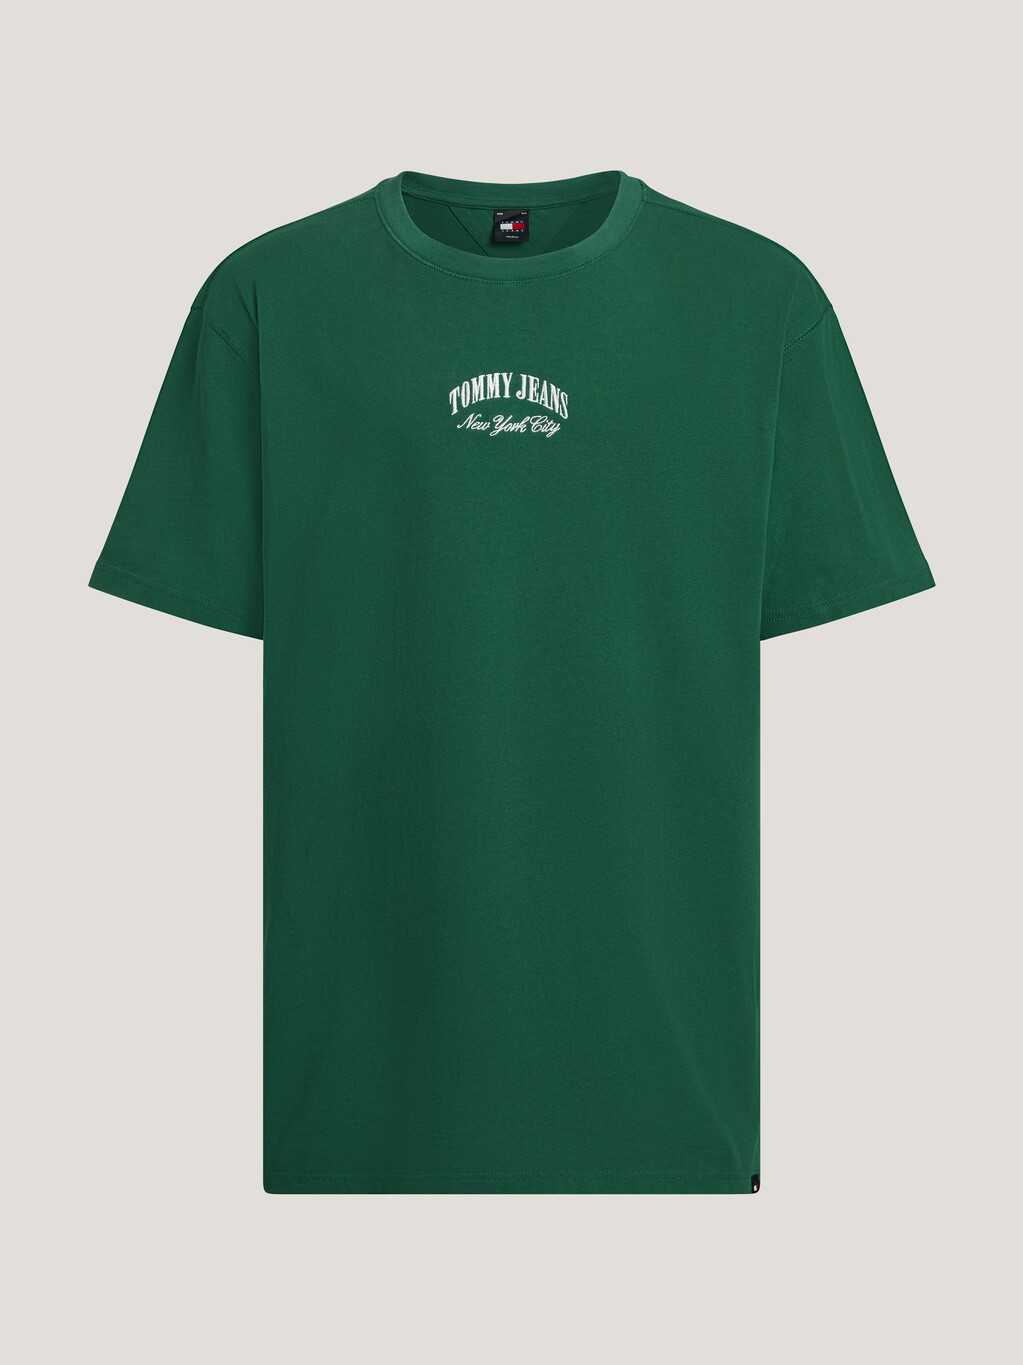 經典 NYC 標誌 T 恤, Court Green, hi-res